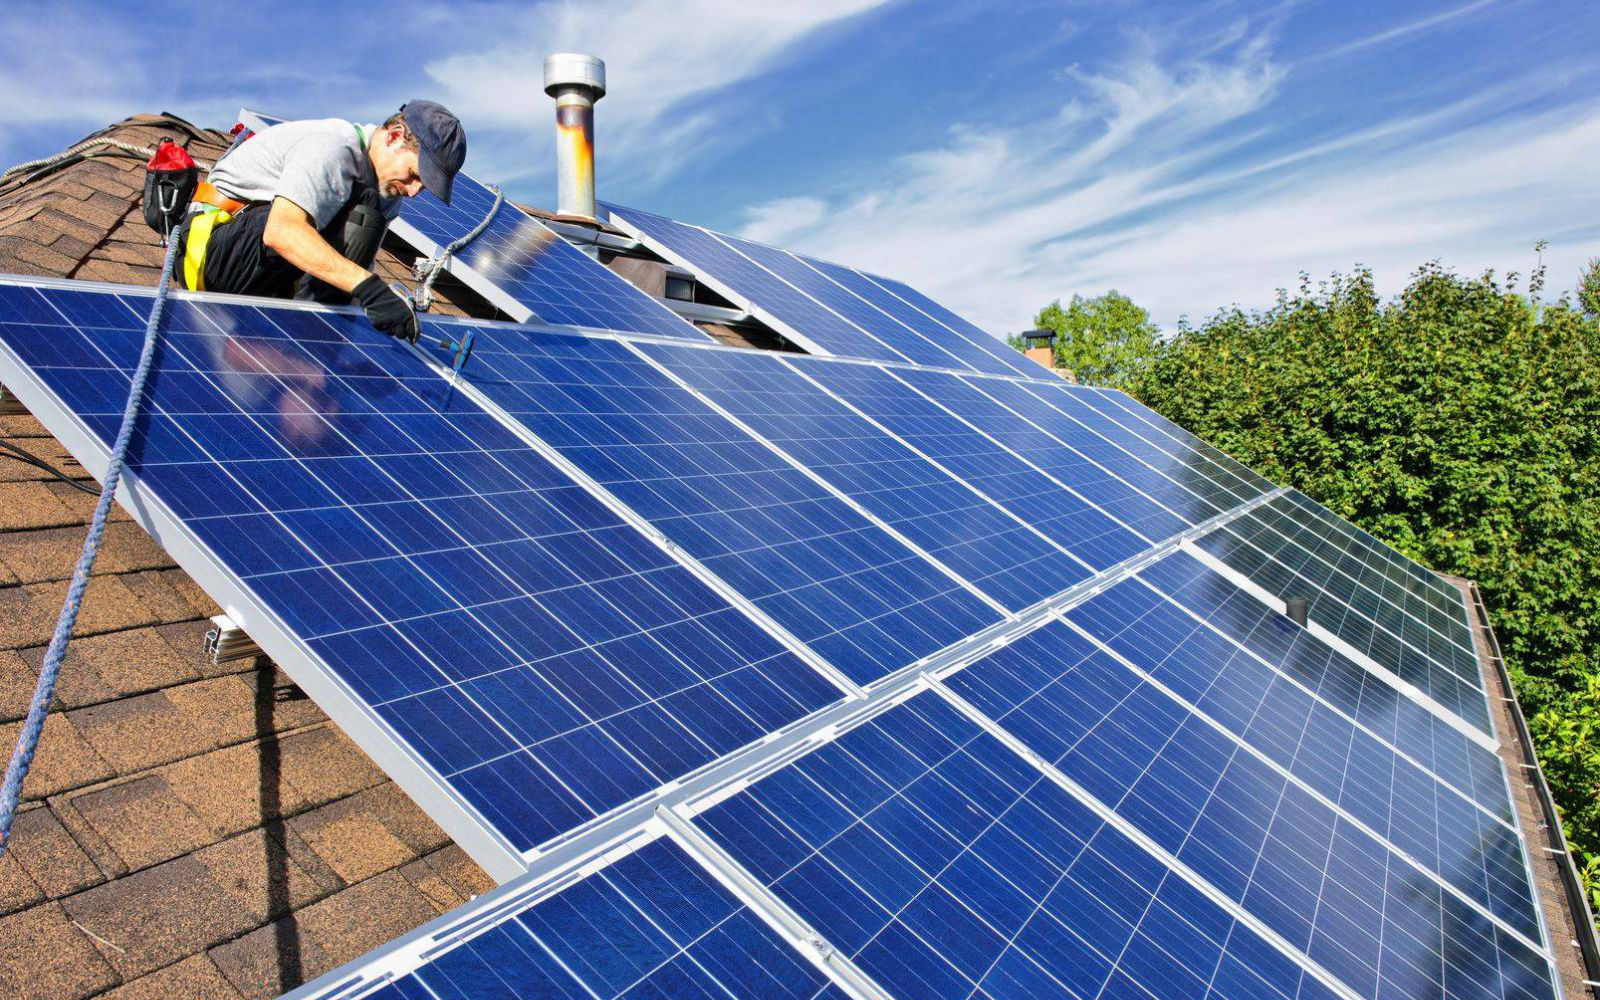 EVN "lúng túng" với điện mặt trời mái nhà, xin chỉ ký hợp đồng mua bán điện với các hệ thống không gây quá tải